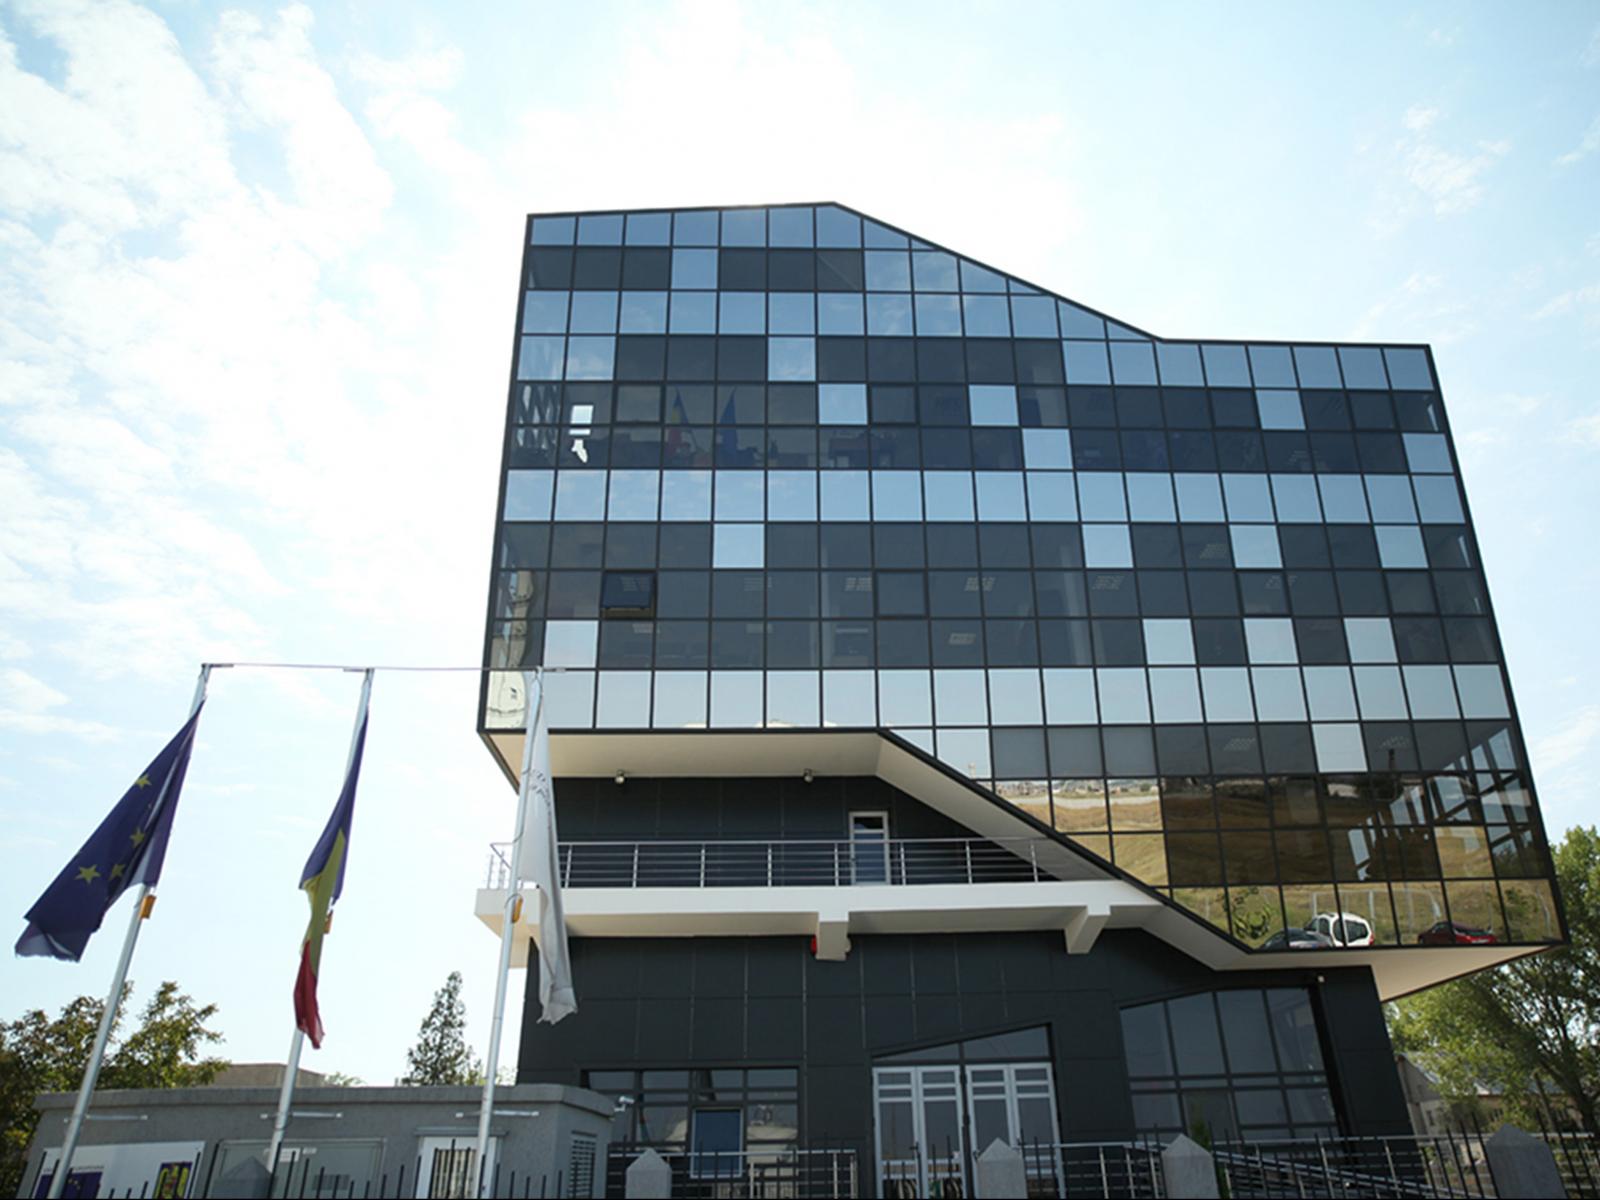 Concurs pentru ocuparea unui post de consilier juridic în cadrul Compartimentului Juridic, la sediul central din Călărași - 3 aprilie 2019